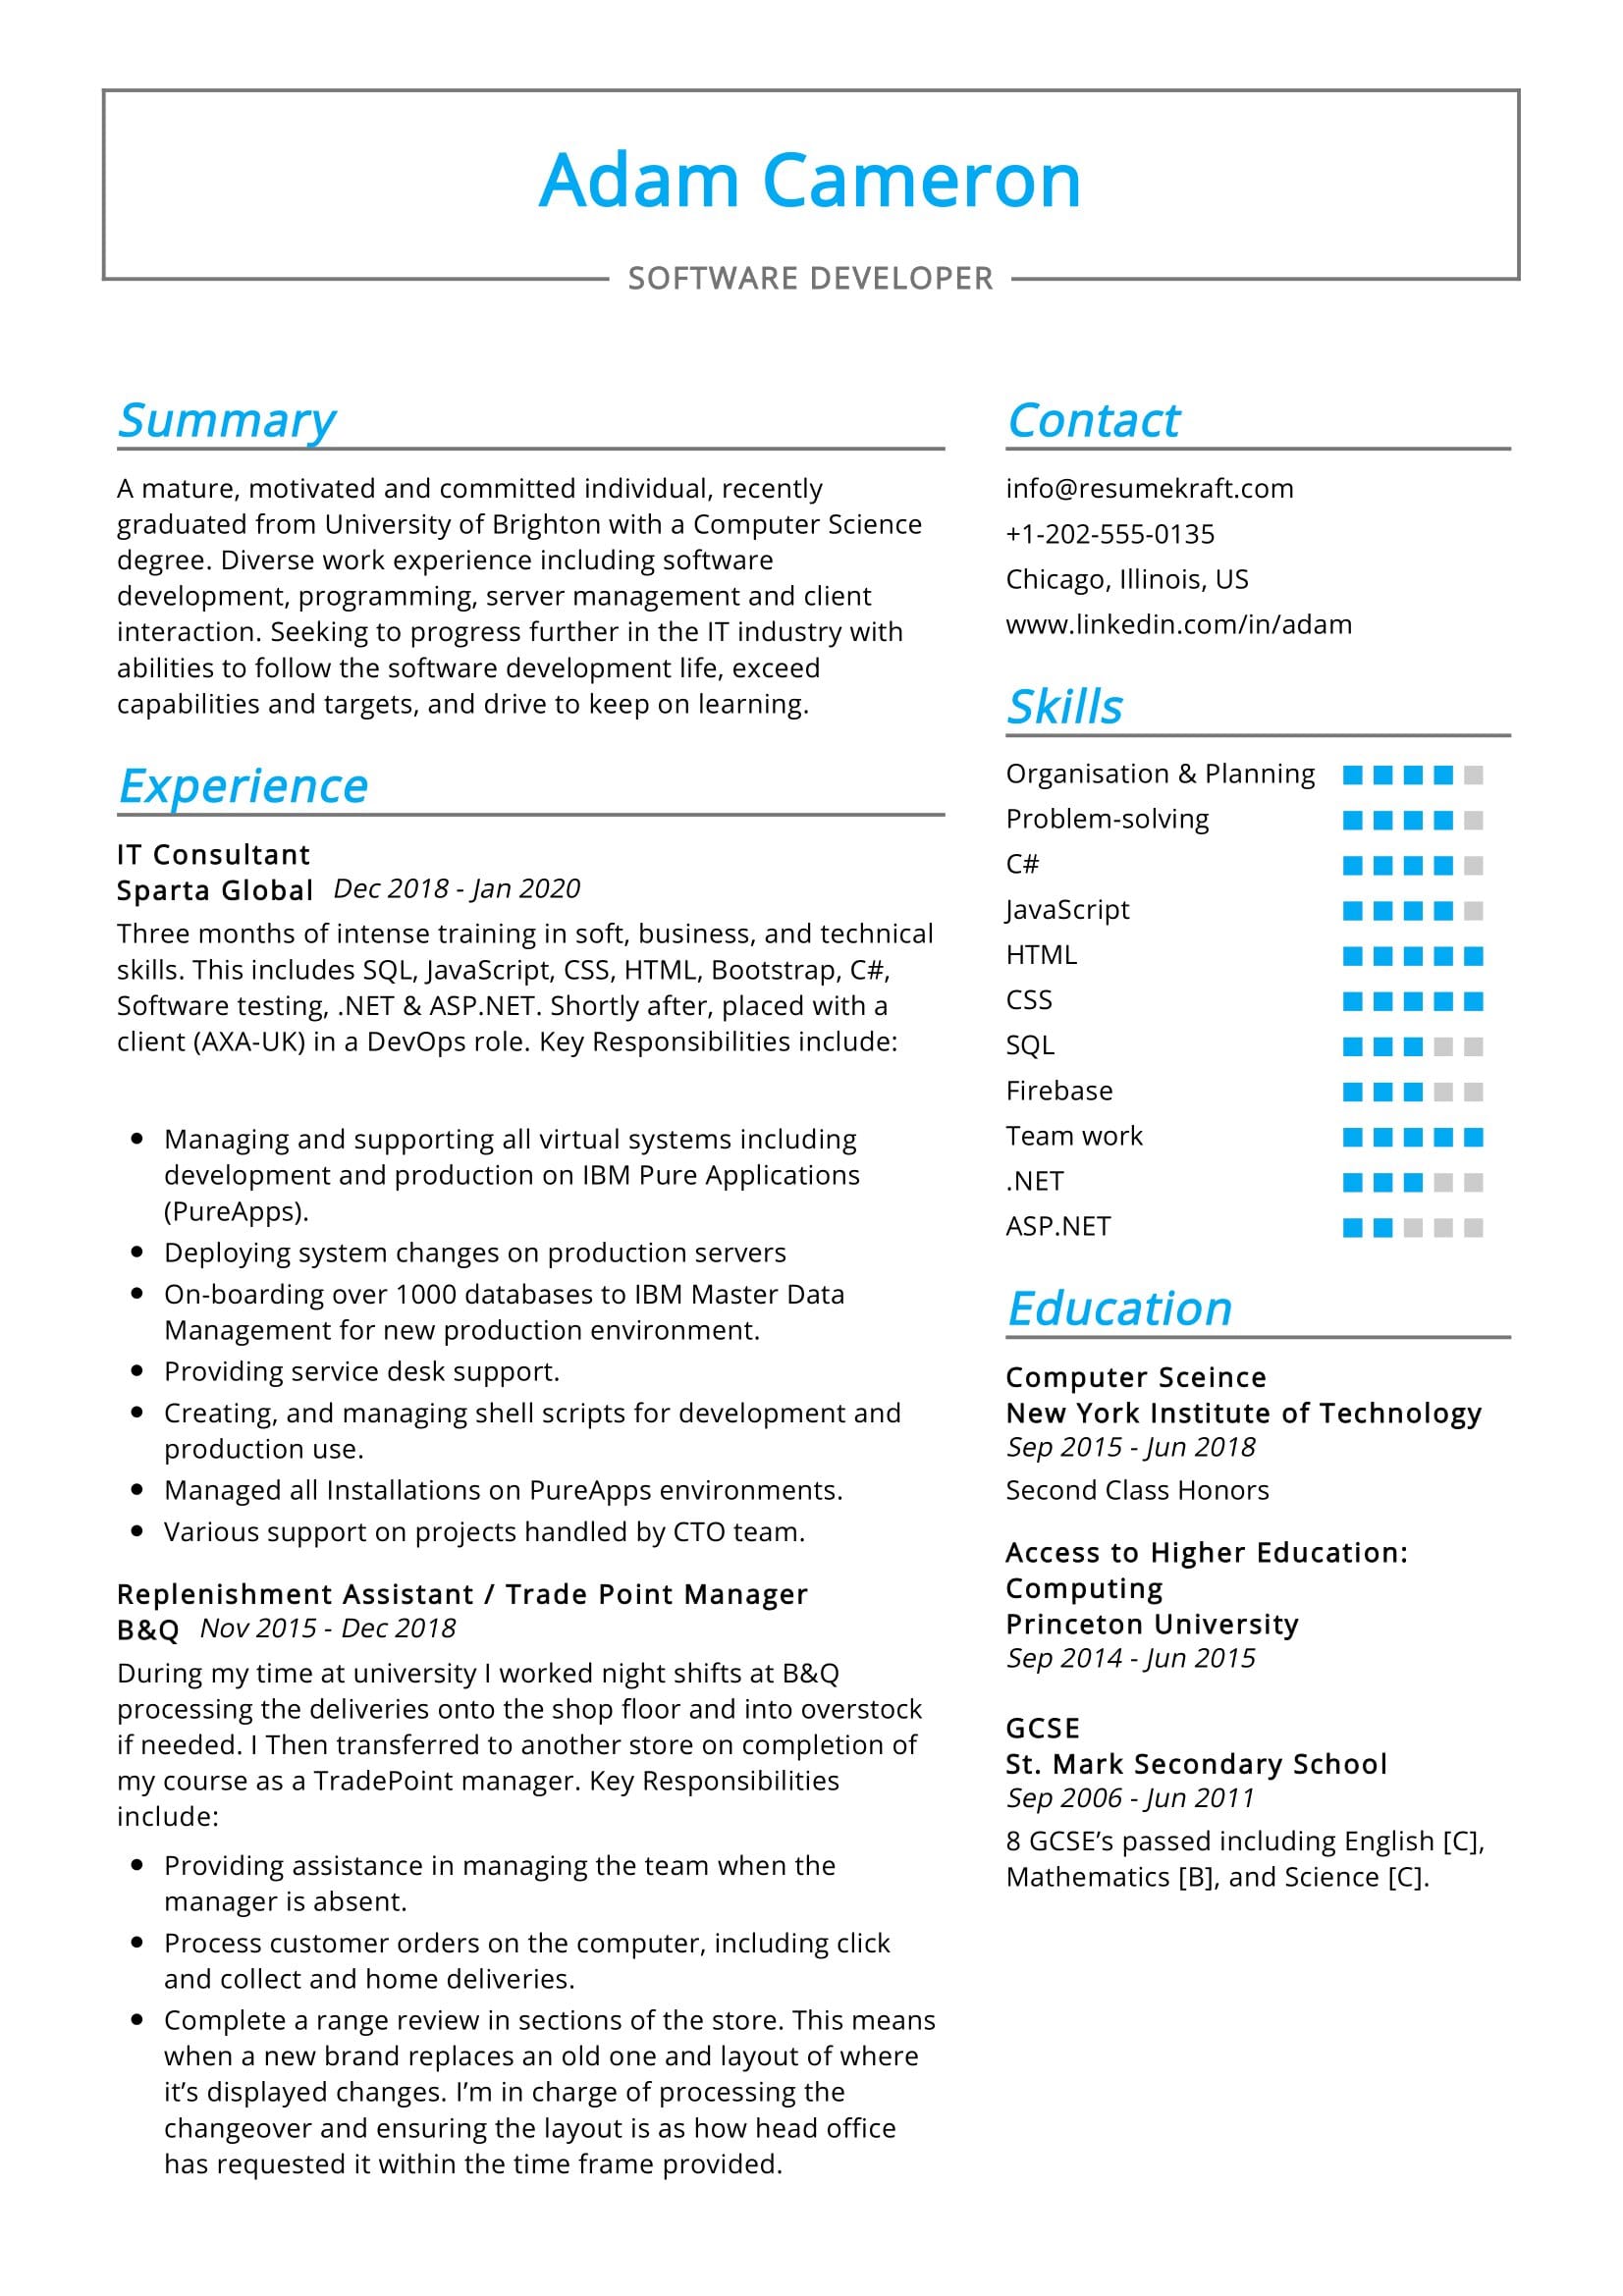 IT Consultant Resume Sample 0001 